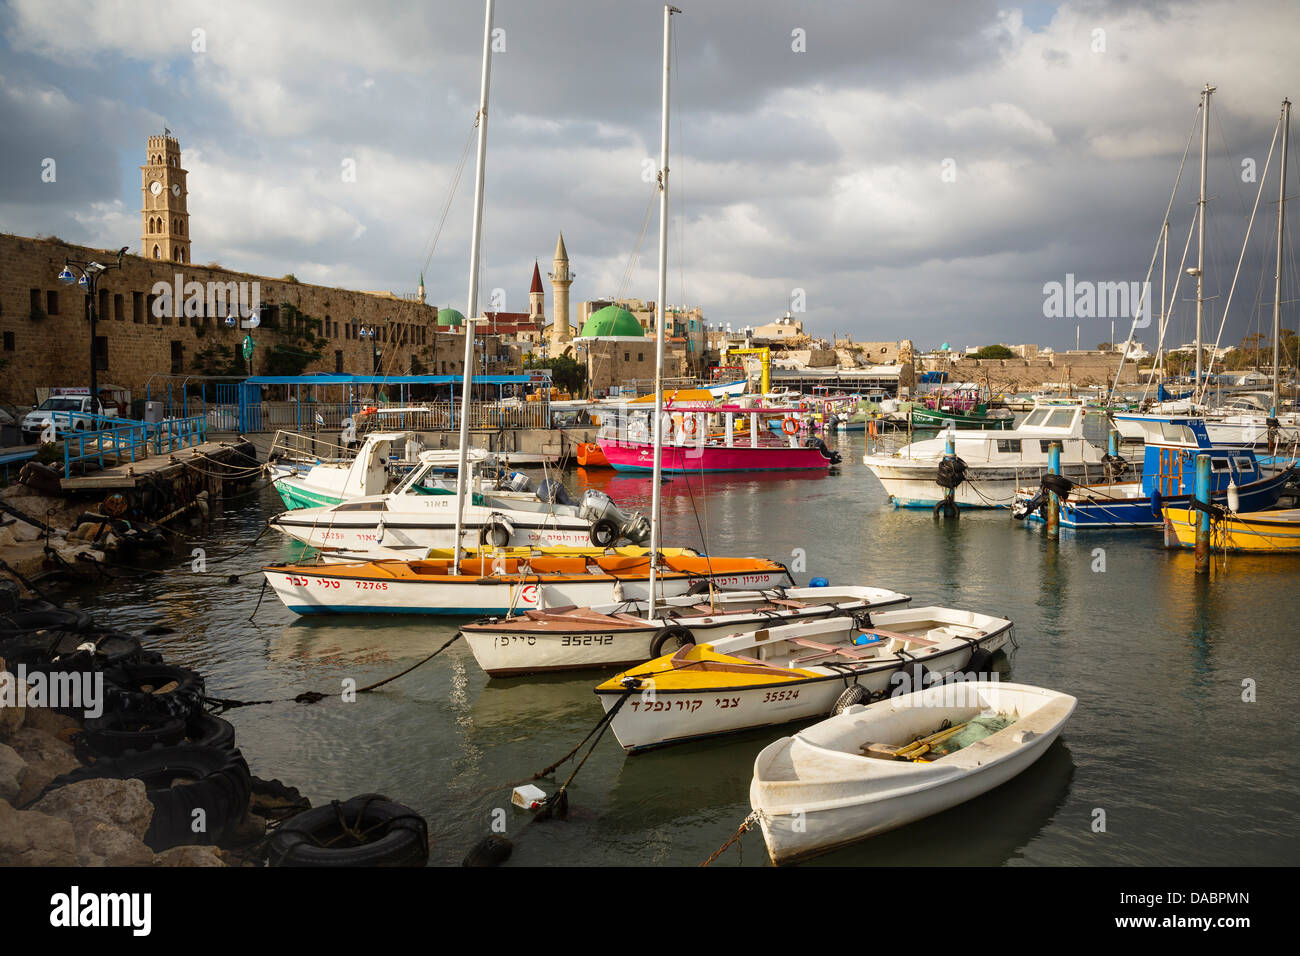 Le port dans la vieille ville d'Akko (Acre), site du patrimoine mondial de l'UNESCO, Israël, Moyen Orient Banque D'Images